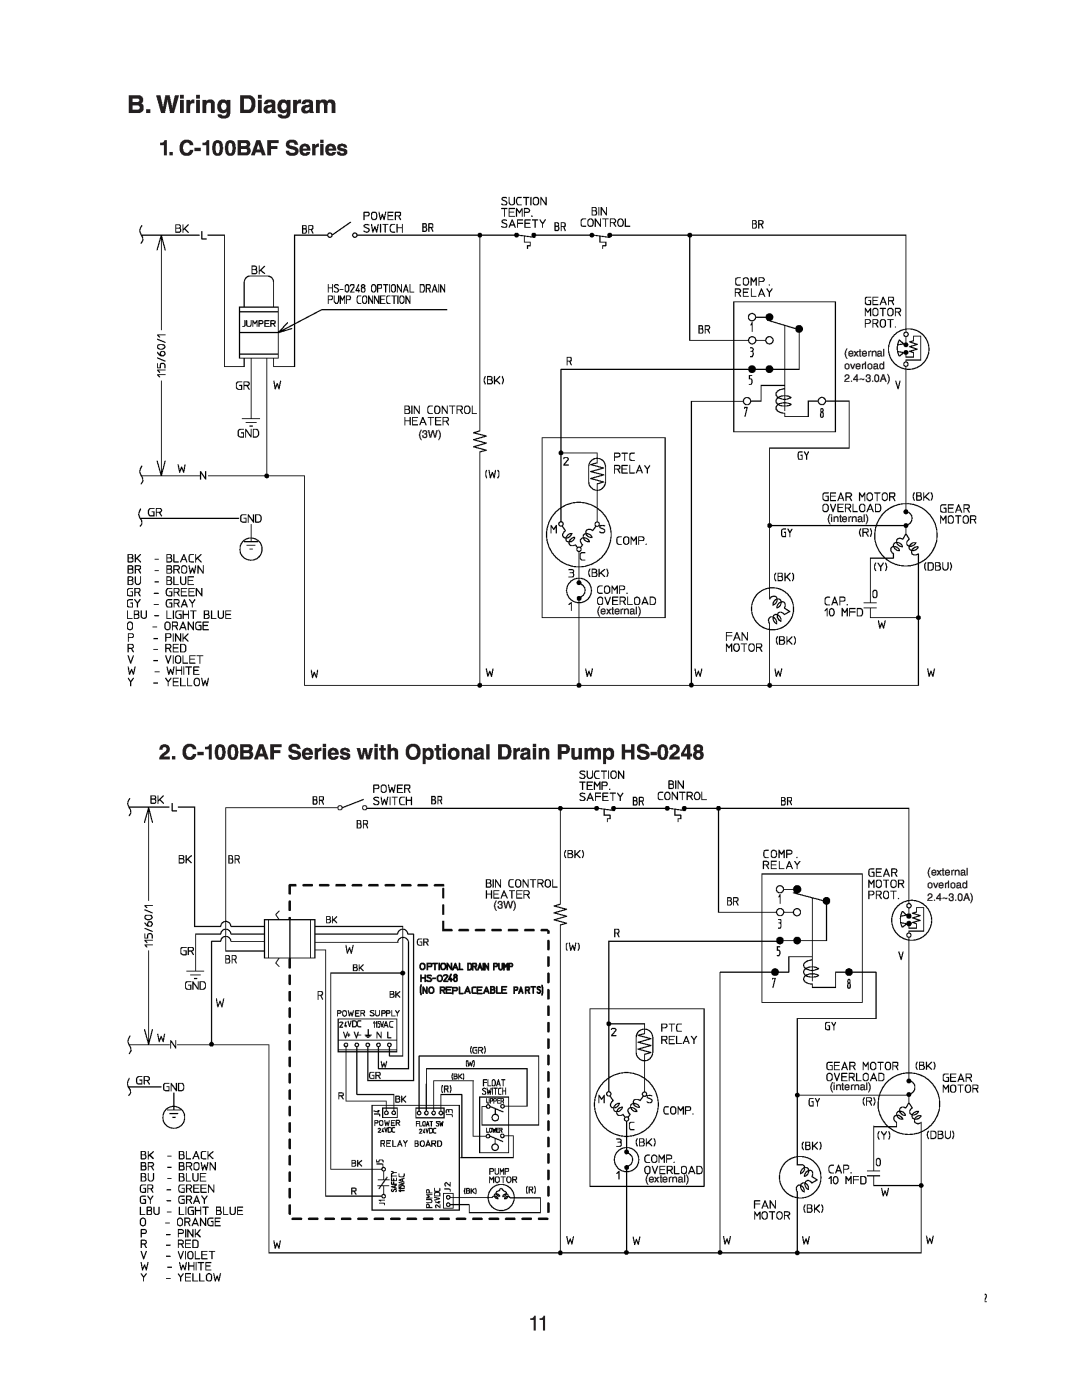 Hoshizaki C-100BAF-ADDS service manual B. Wiring Diagram, 1. C-100BAFSeries 